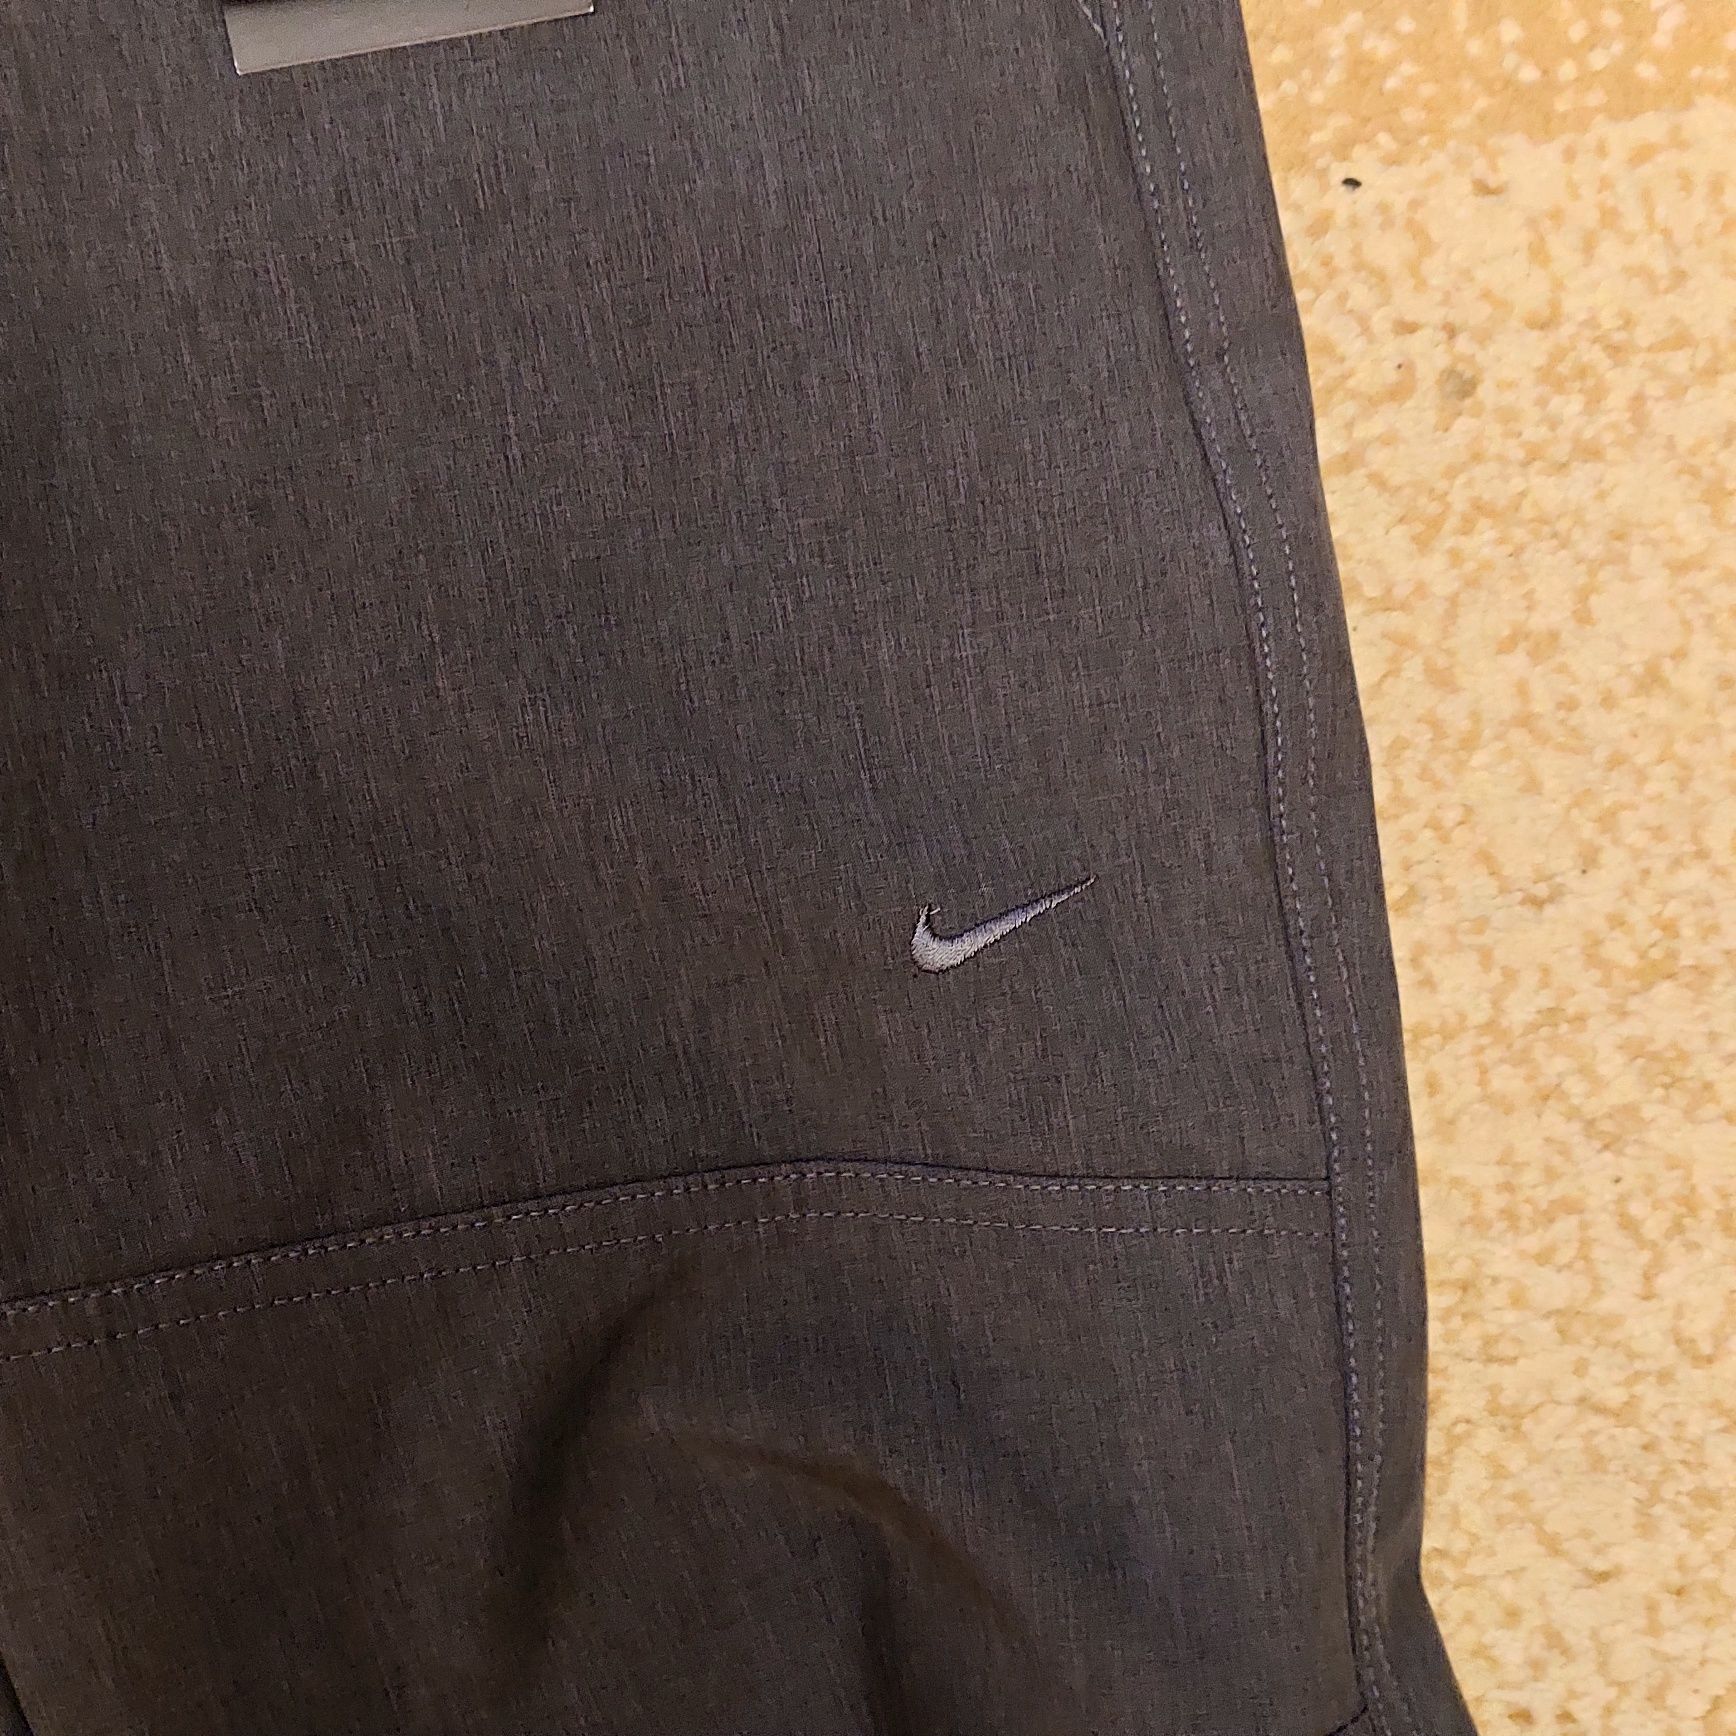 Продам термоштаны Nike размер м